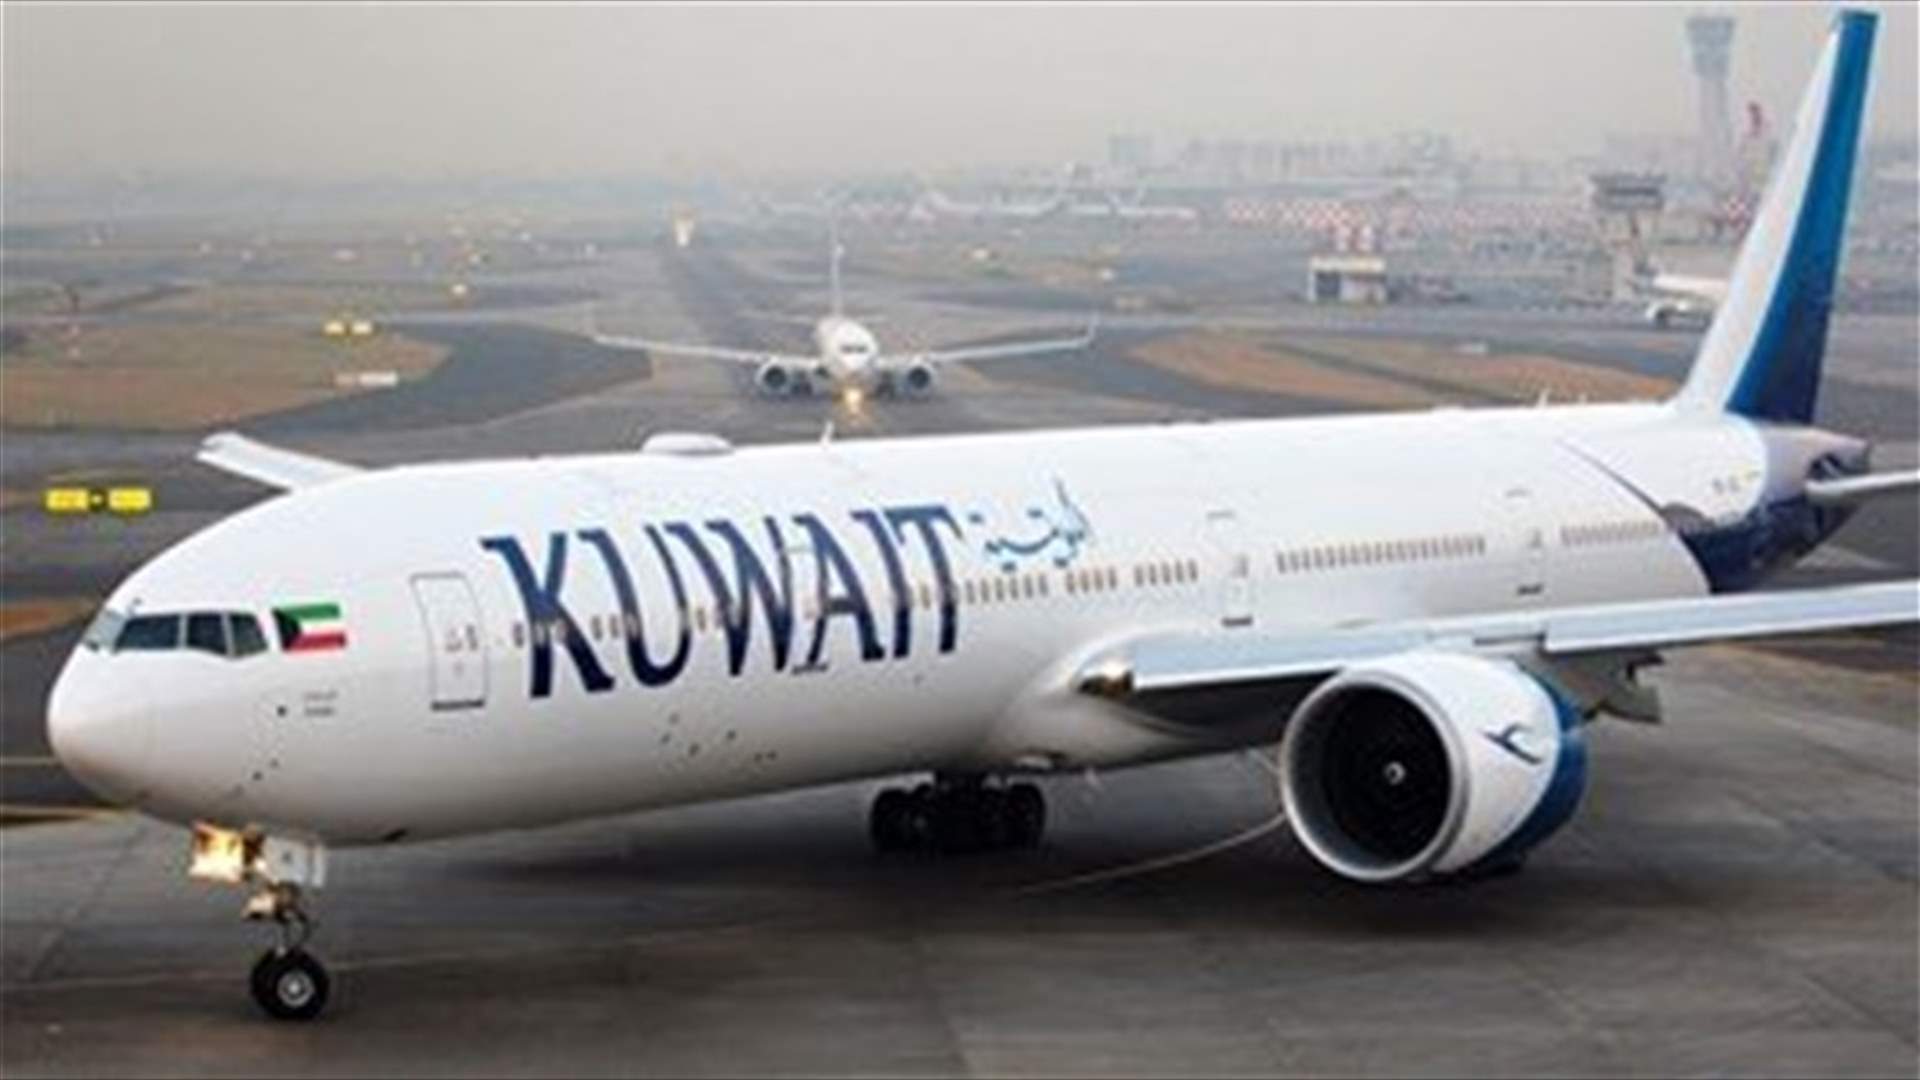 Kuwait Airways to cut 1,500 jobs due to coronavirus